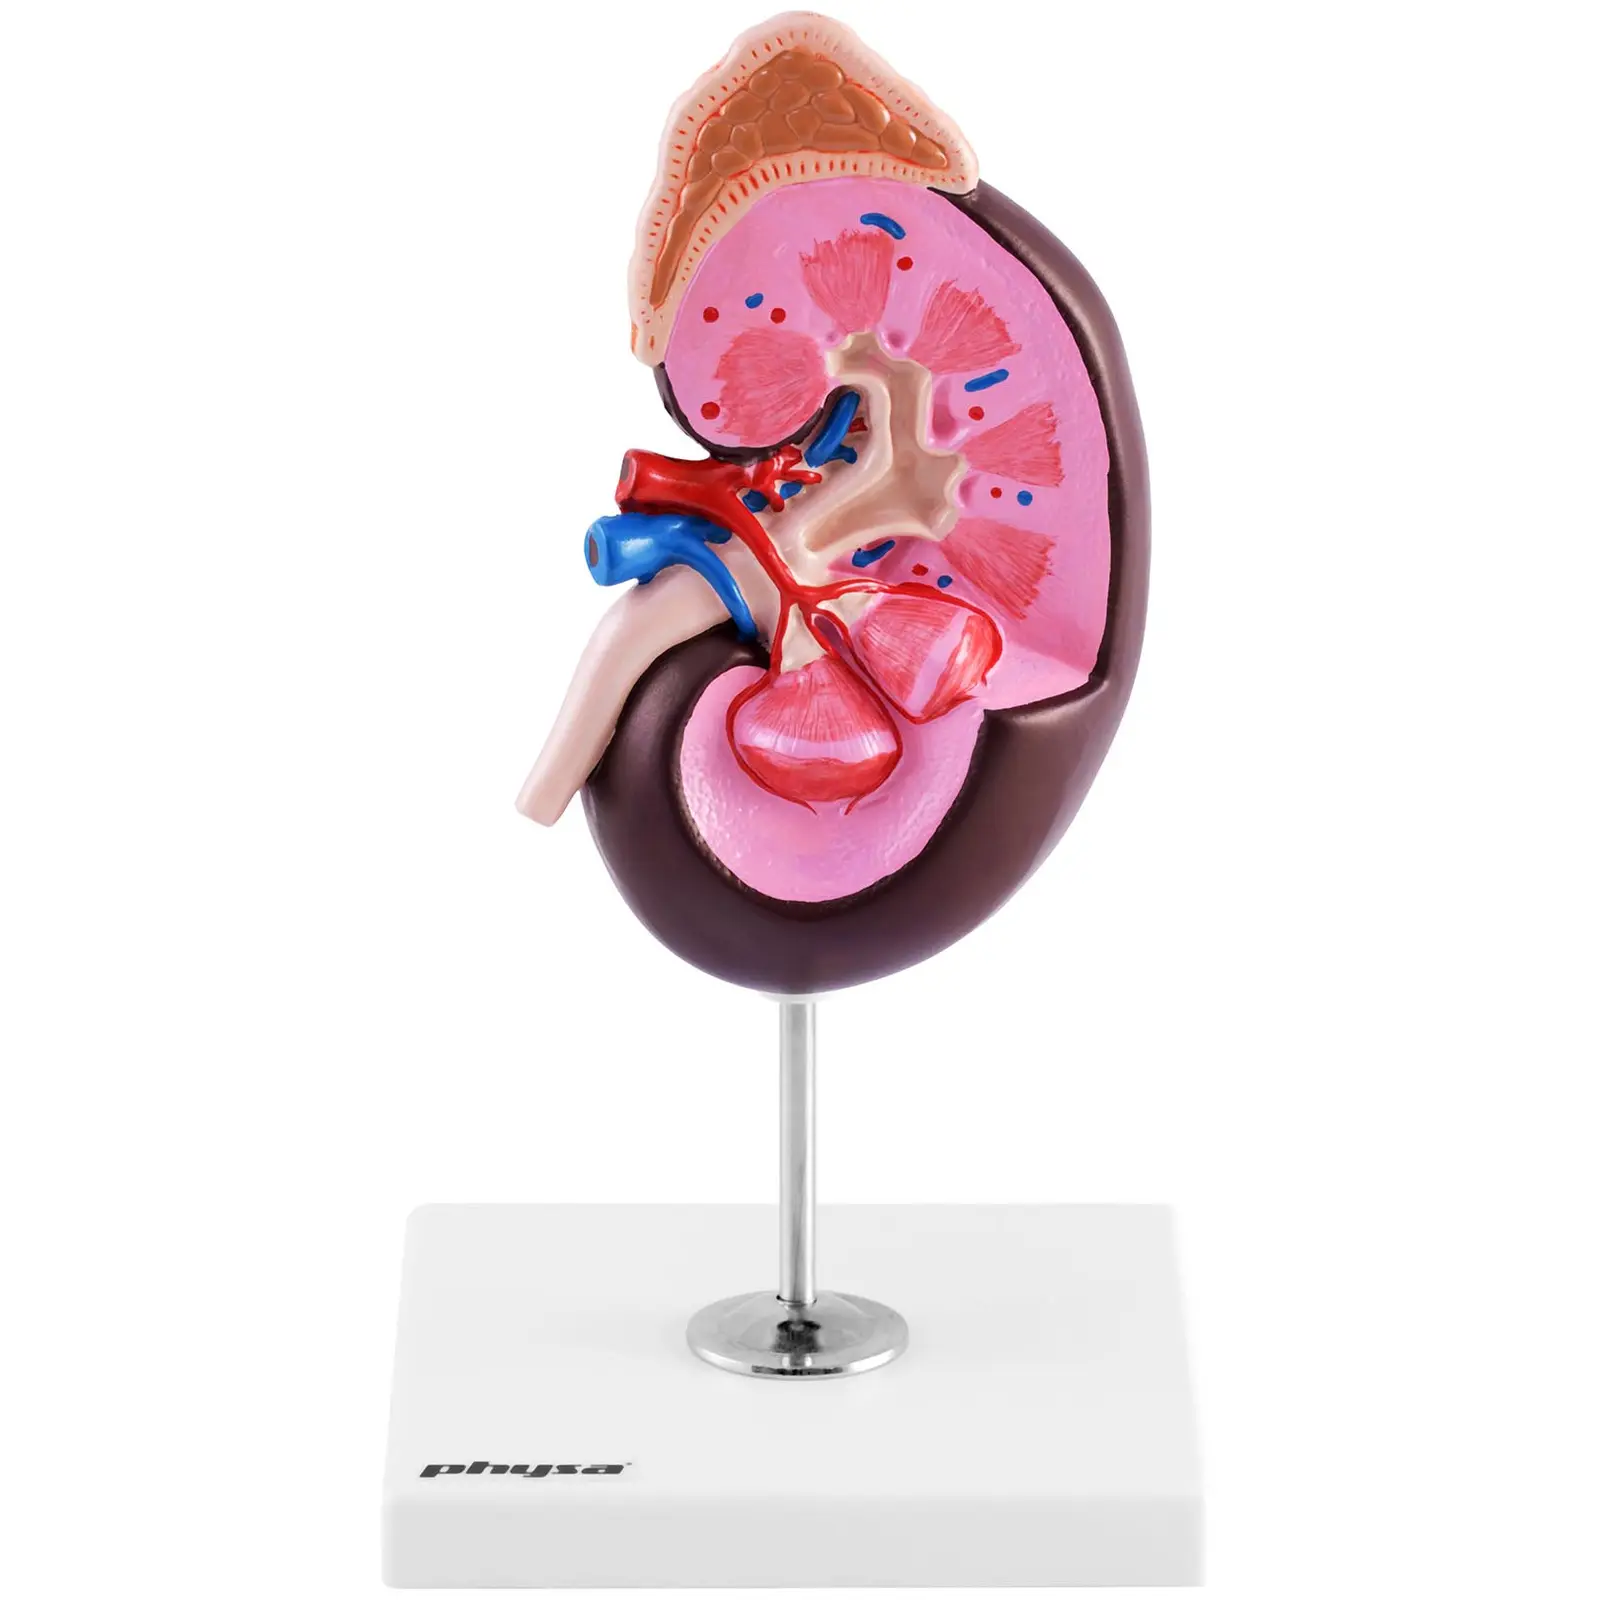 Modello anatomico rene - Ingrandimento di 1,5 volte